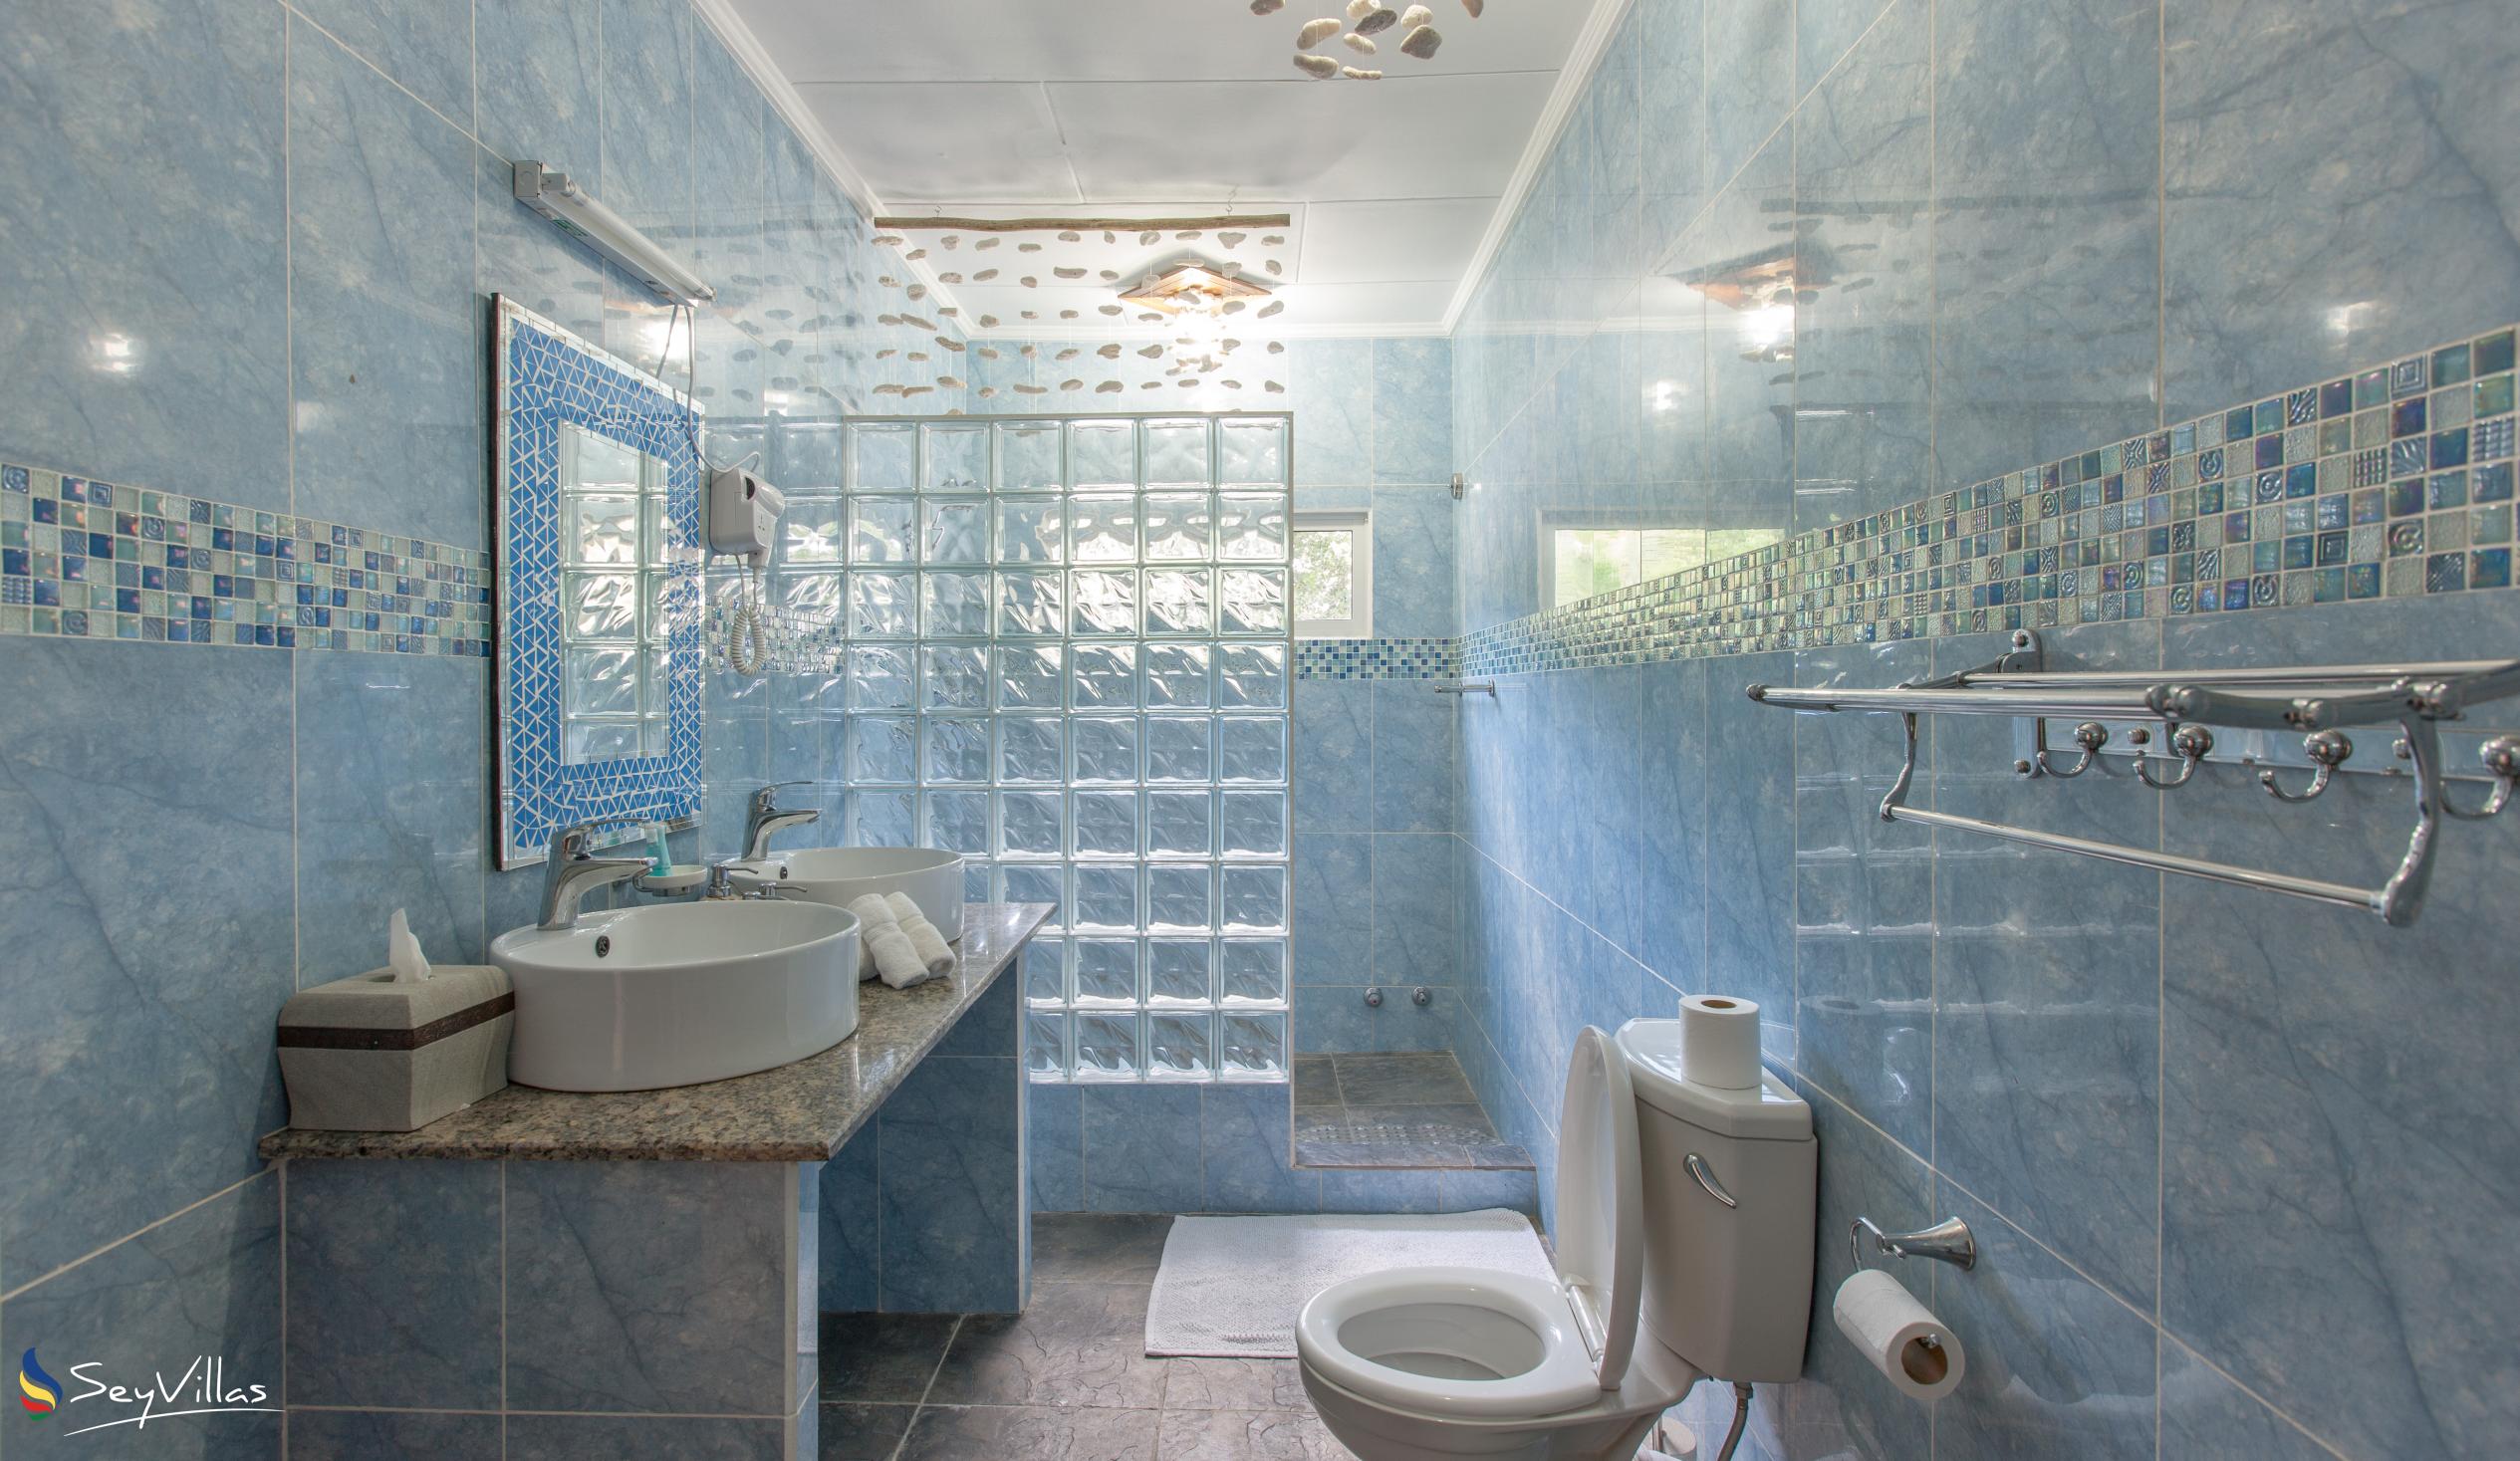 Photo 40: Villa Authentique - King Room - La Digue (Seychelles)